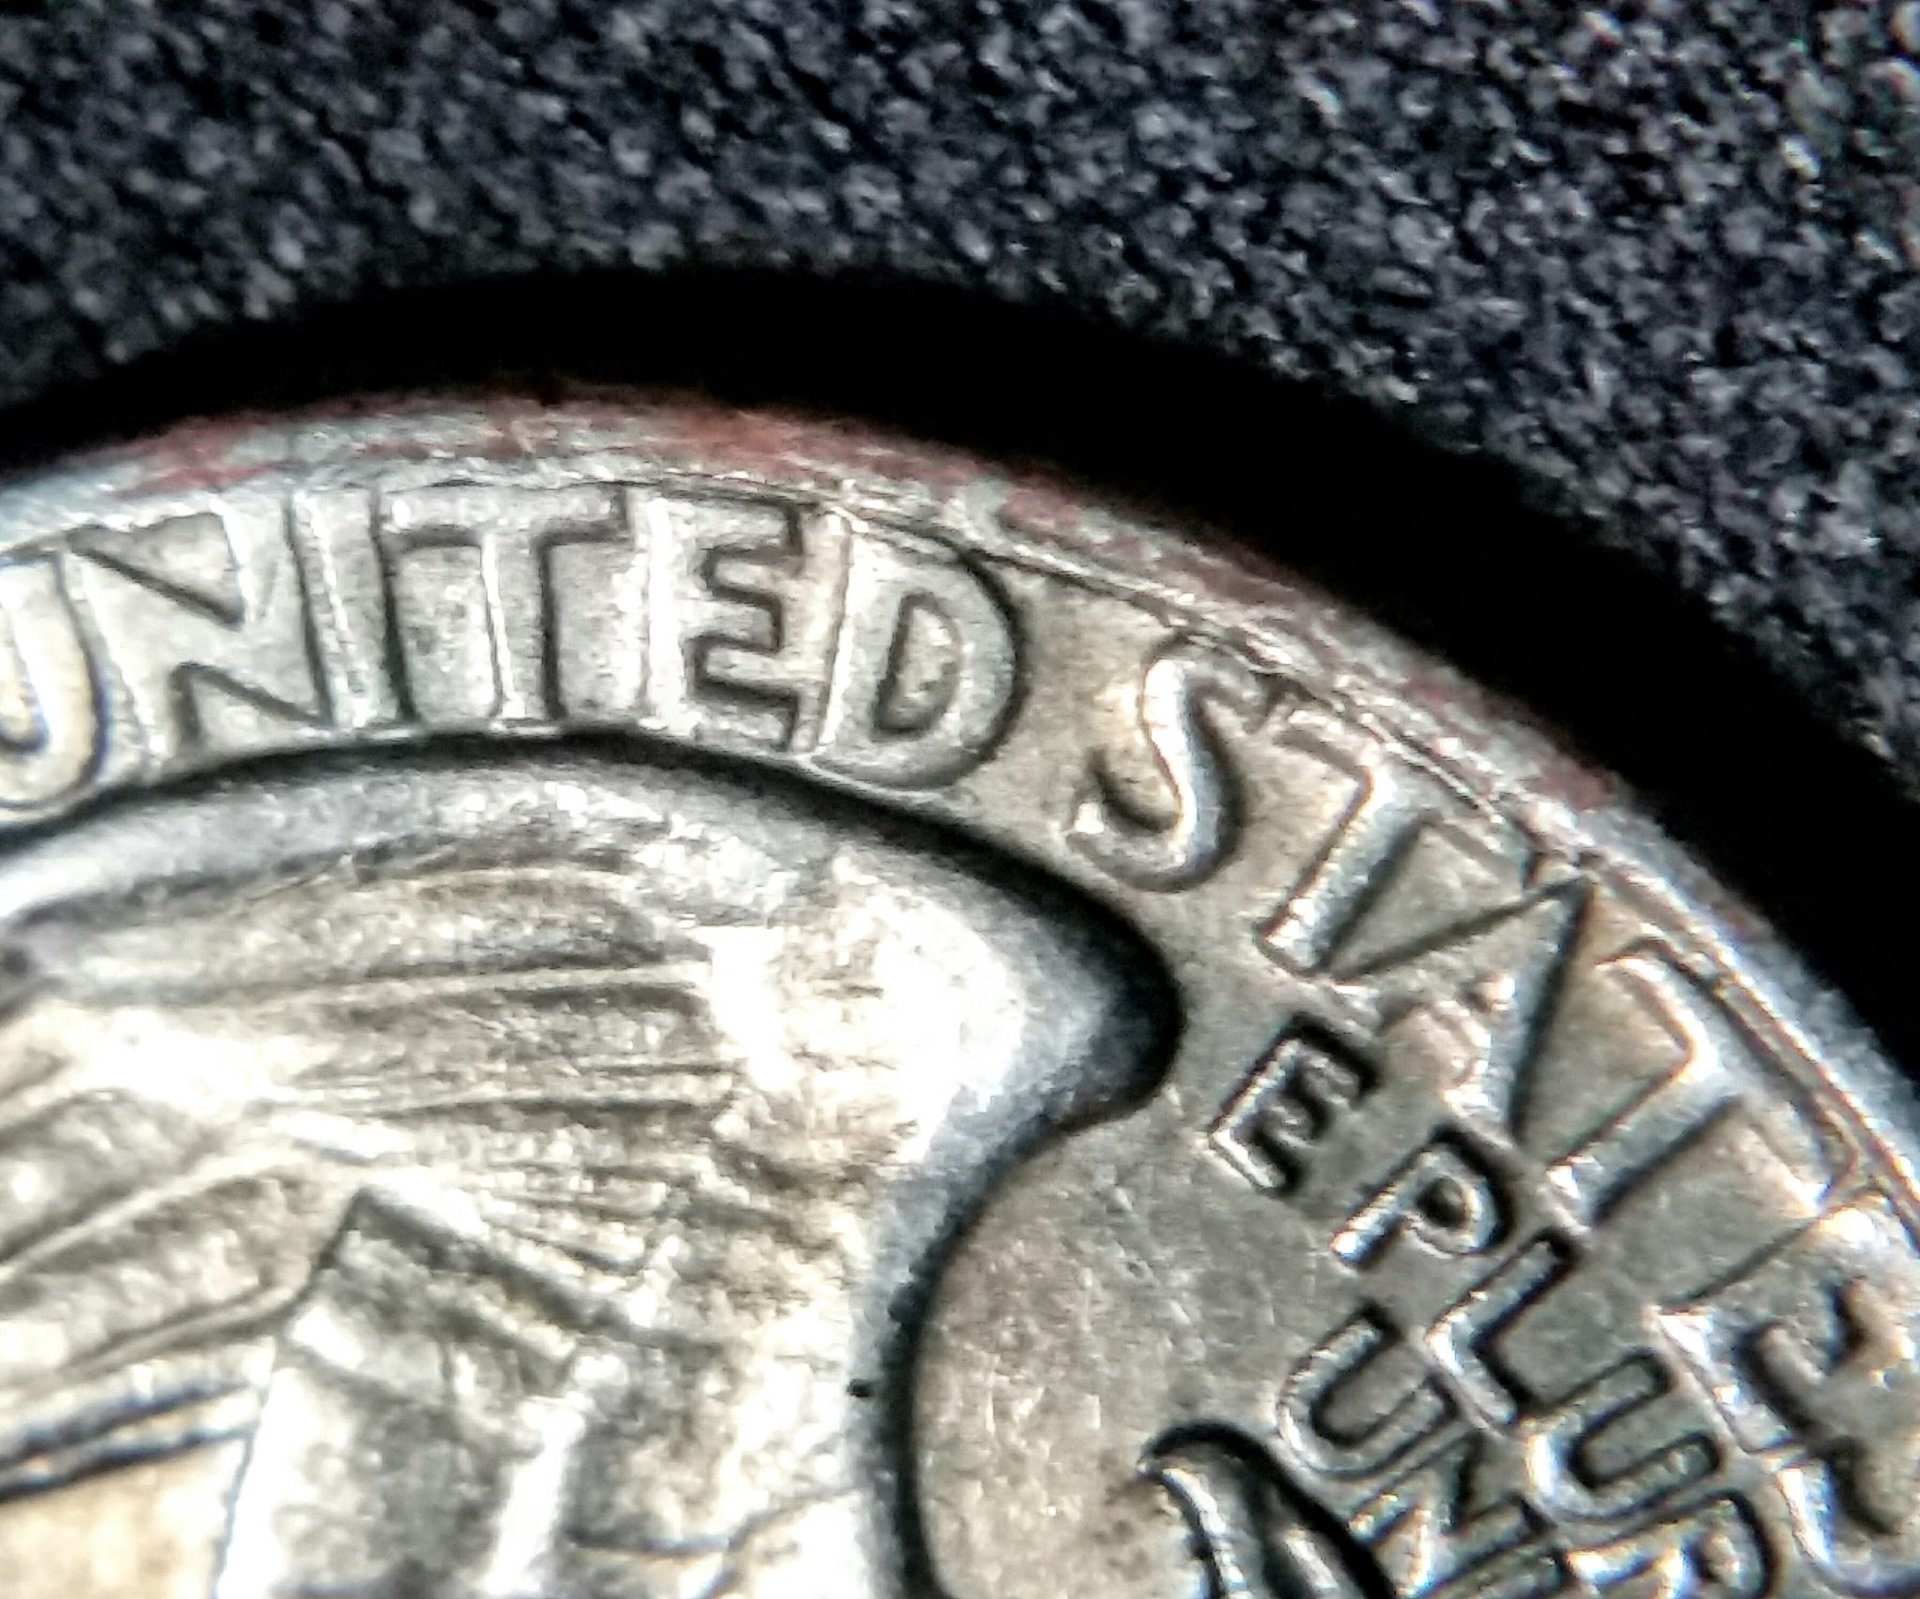 1965 P Washington Quarter Reverse Rim Issues | Coin Talk